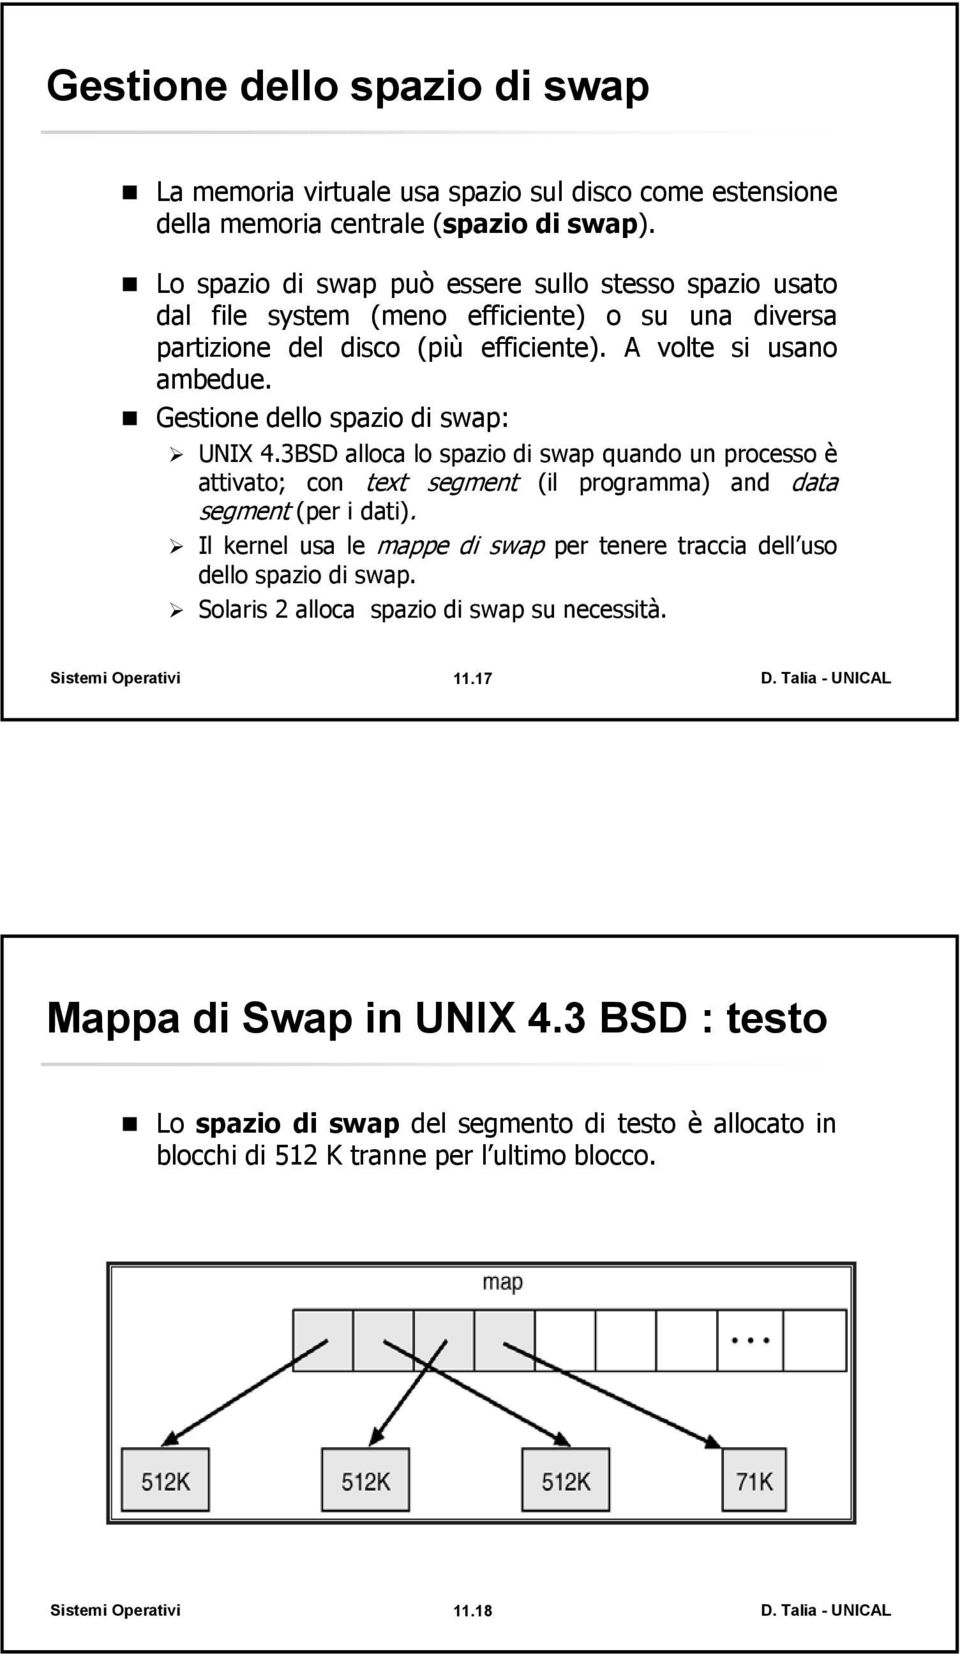 Gestione dello spazio di swap: UNIX 4.3BSD alloca lo spazio di swap quando un processo è attivato; con text segment (il programma) and data segment (per i dati).